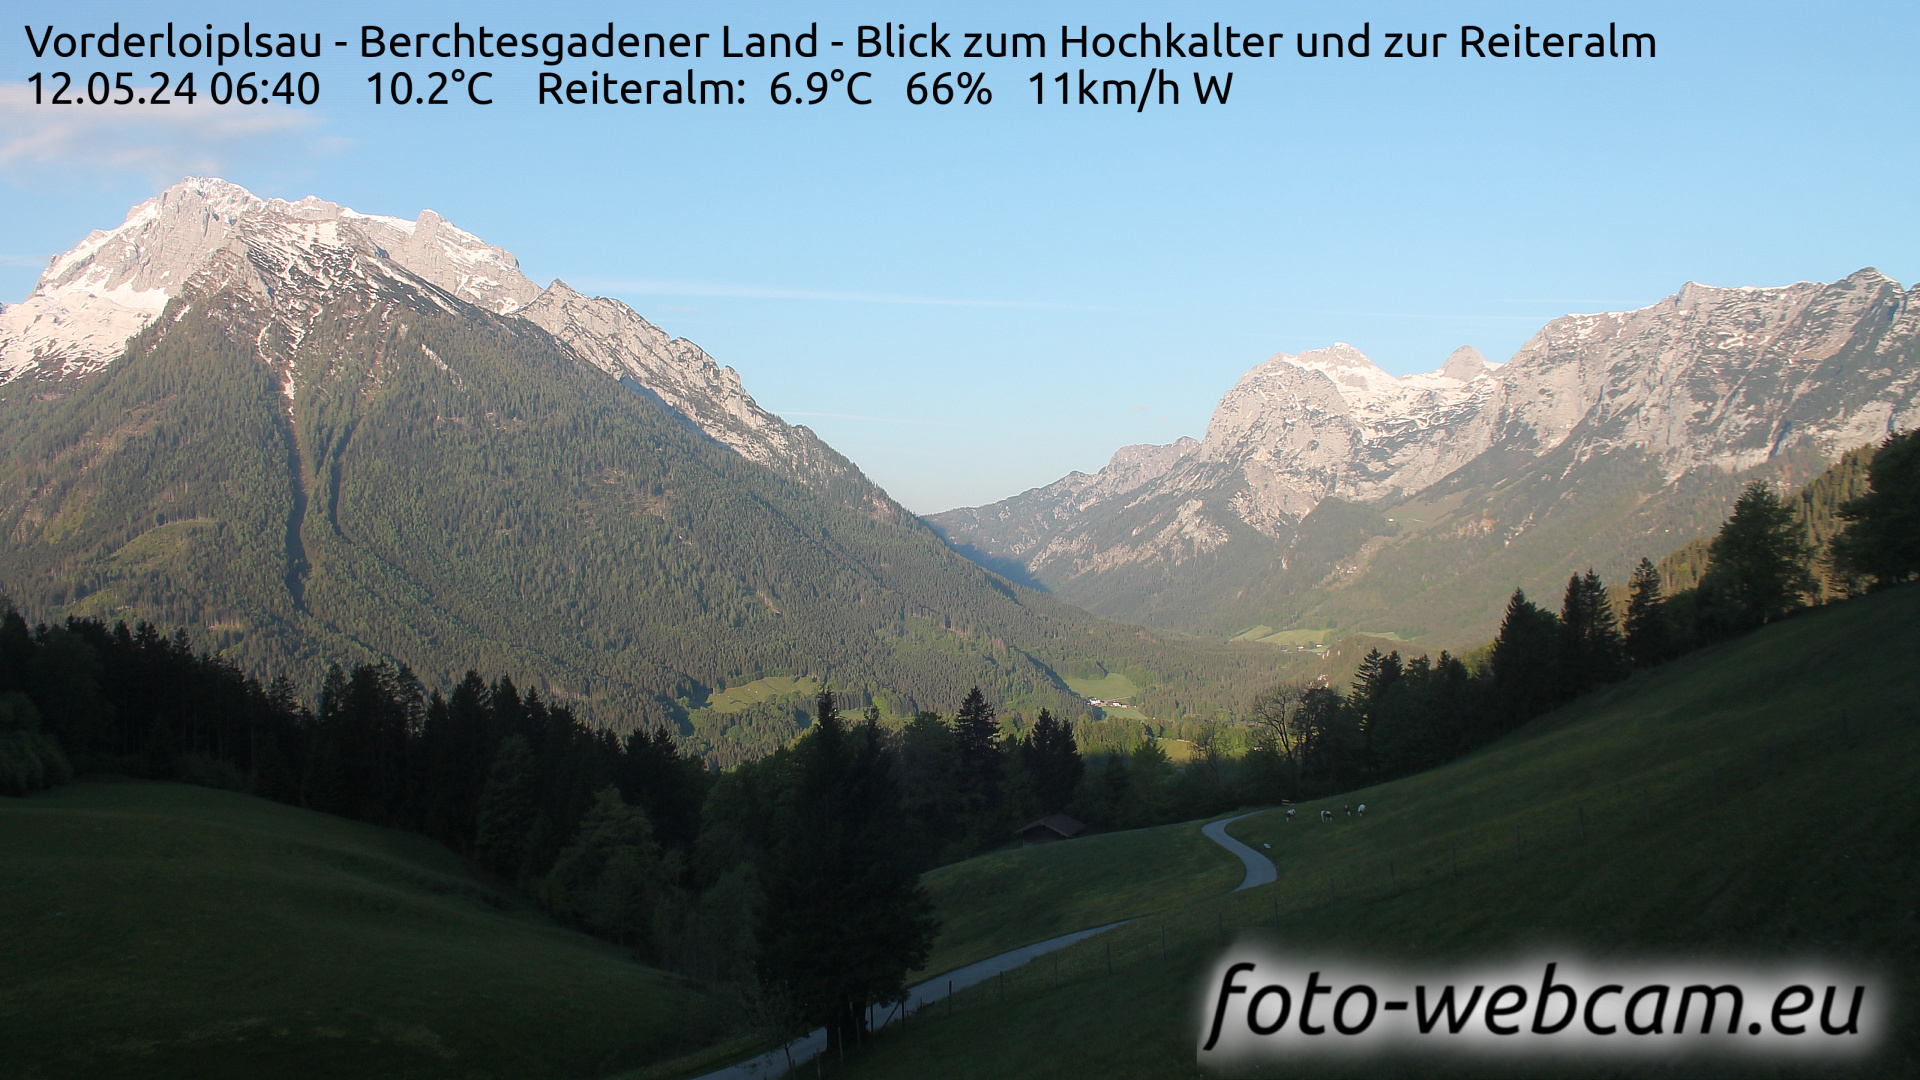 Ramsau bei Berchtesgaden Je. 06:48